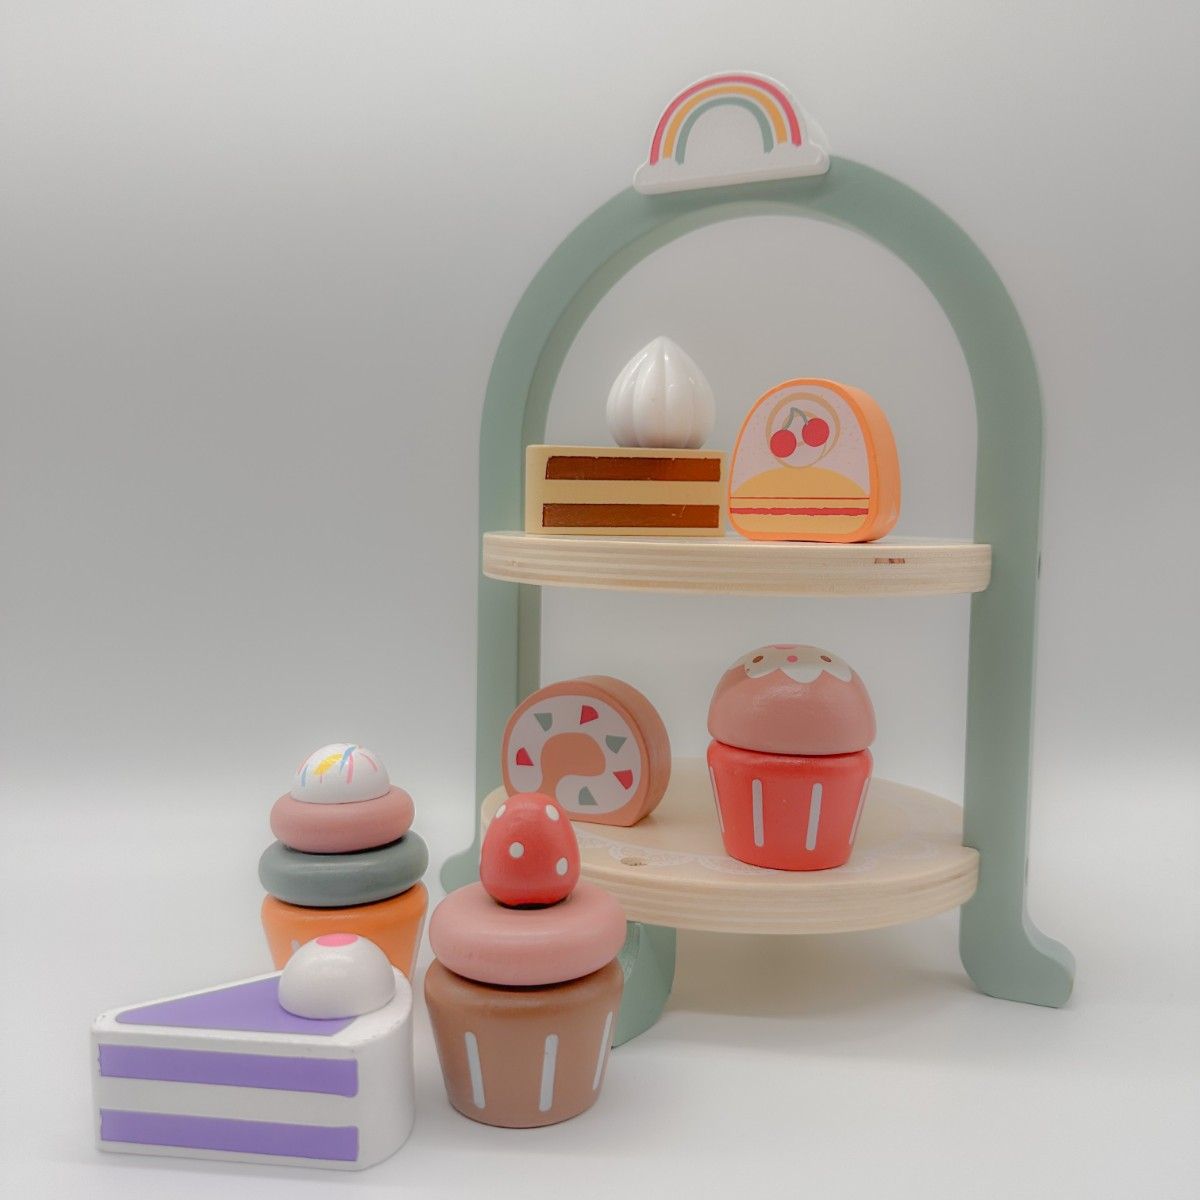 木製おもちゃ ケーキスタンド おままごと キッチン 木製玩具 知育玩具 ままごと 木製